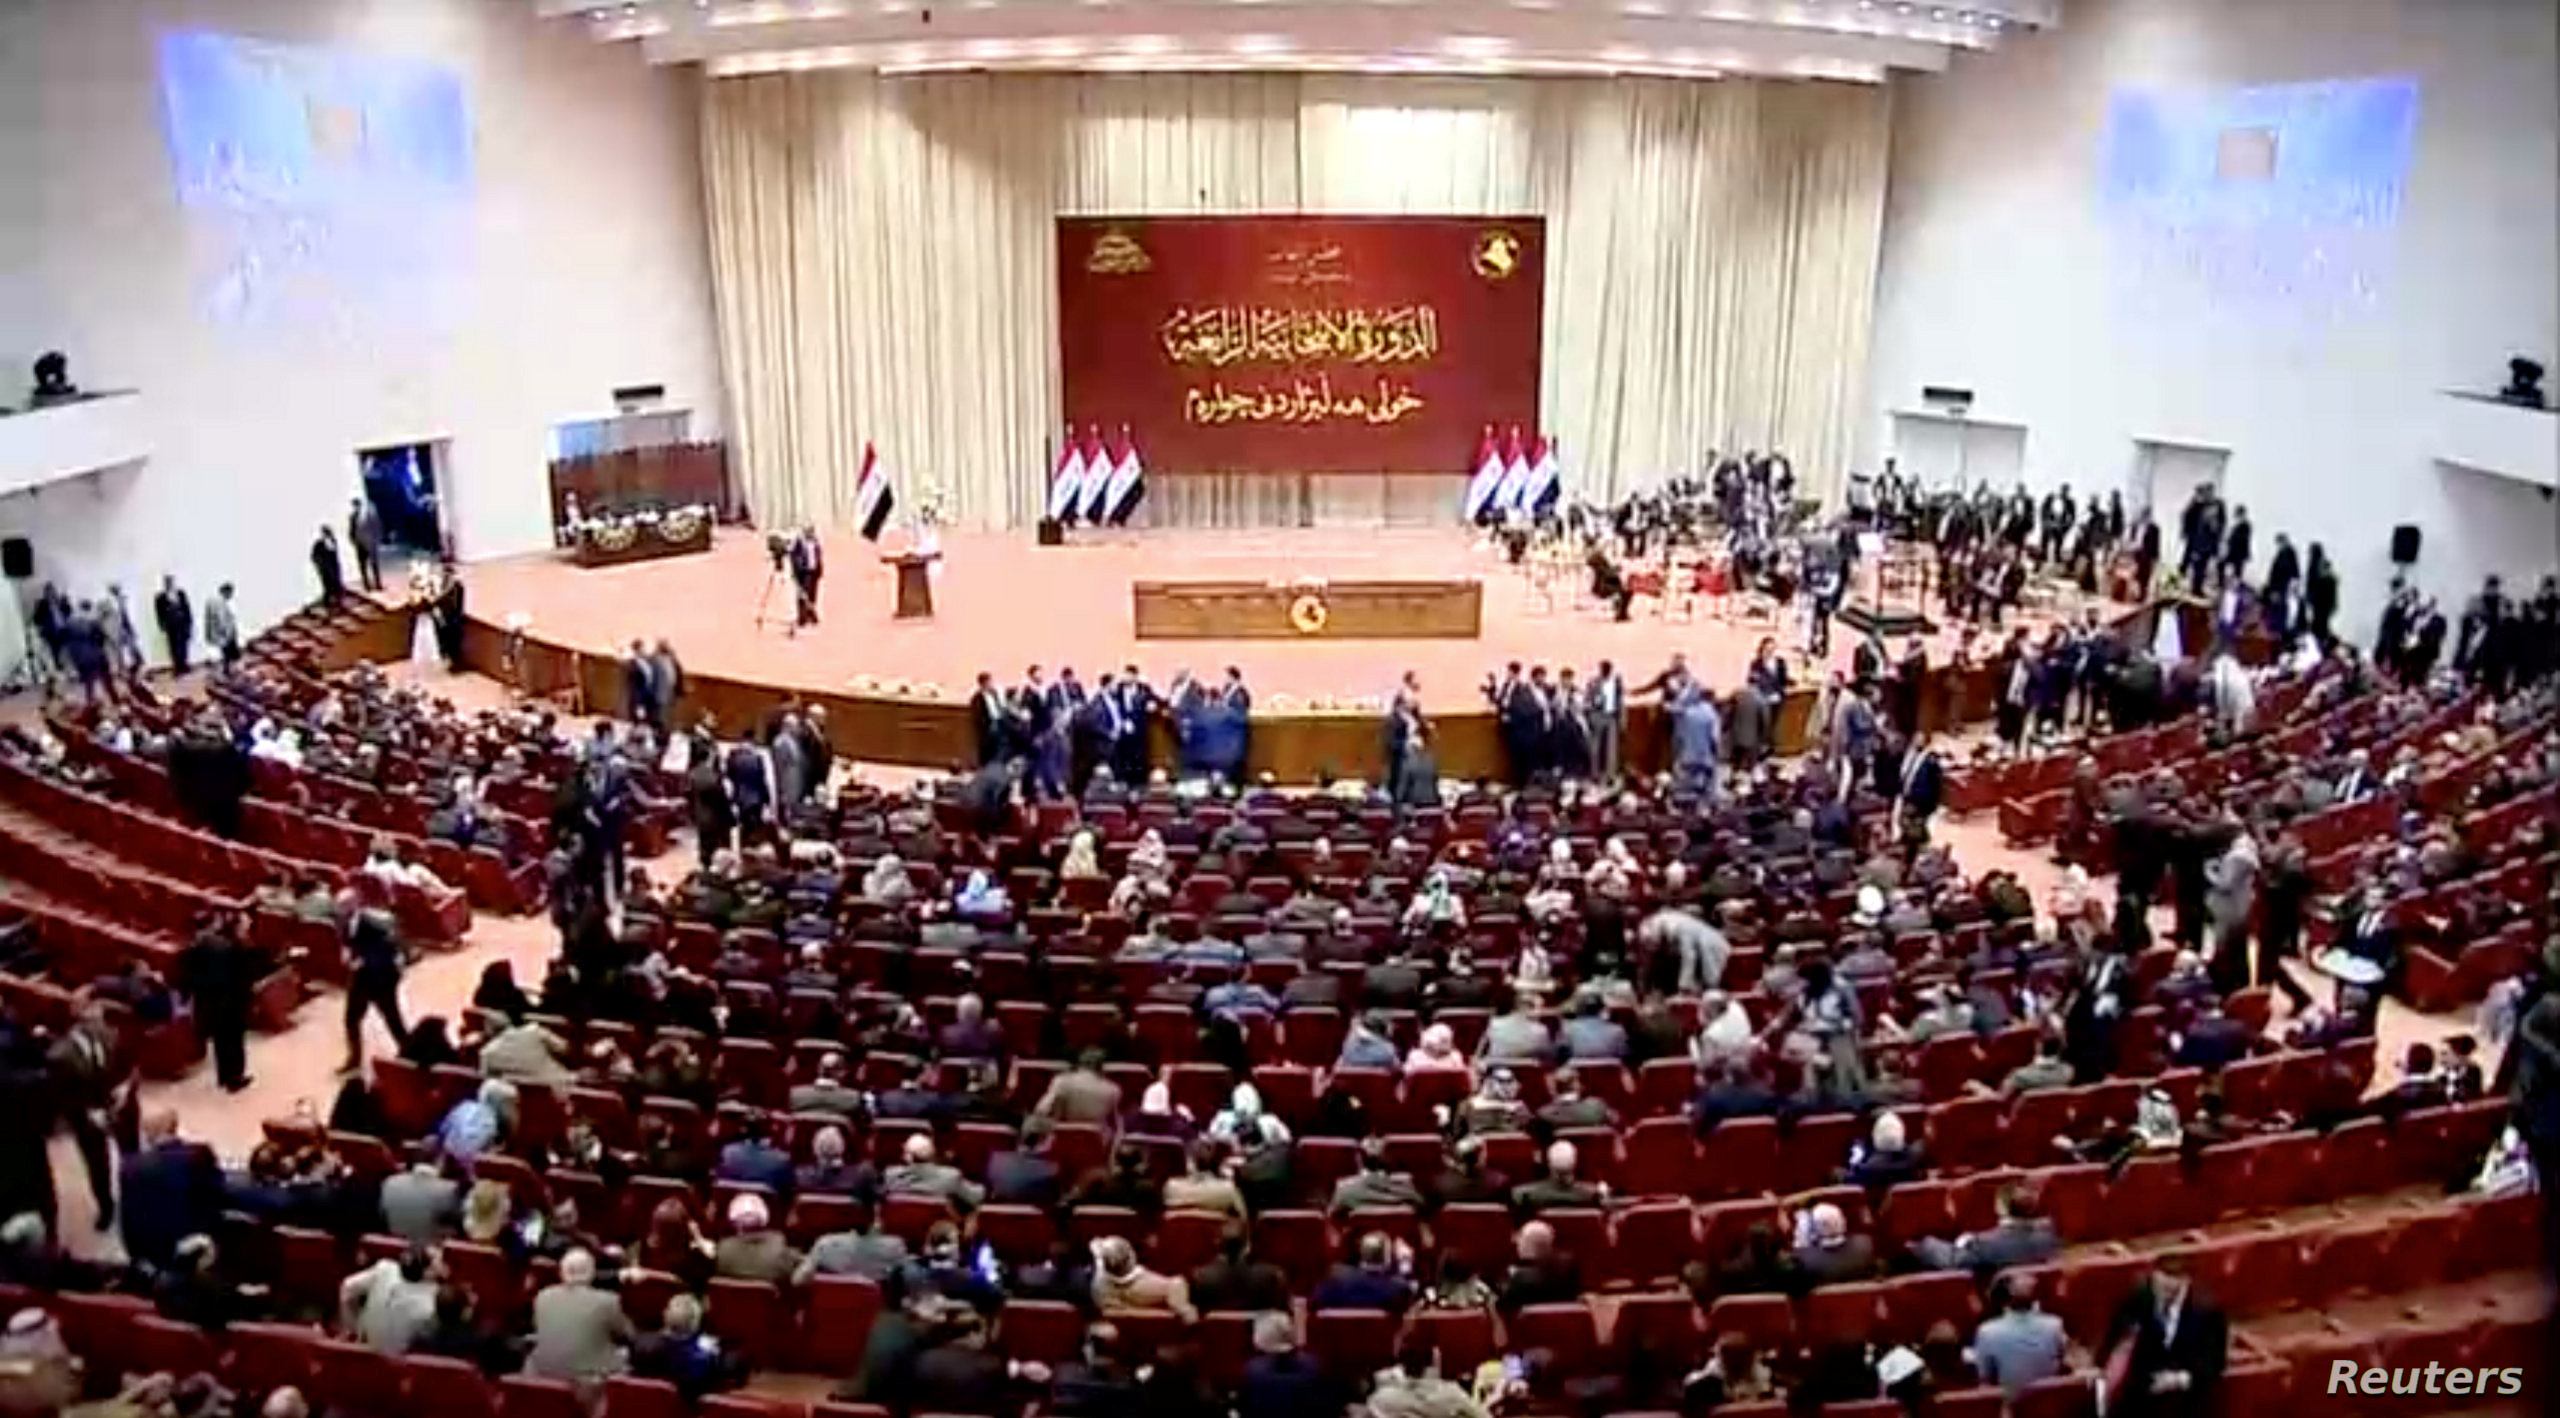 البرلمان العراقي يدعو لعمليات استباقية ضد داعش